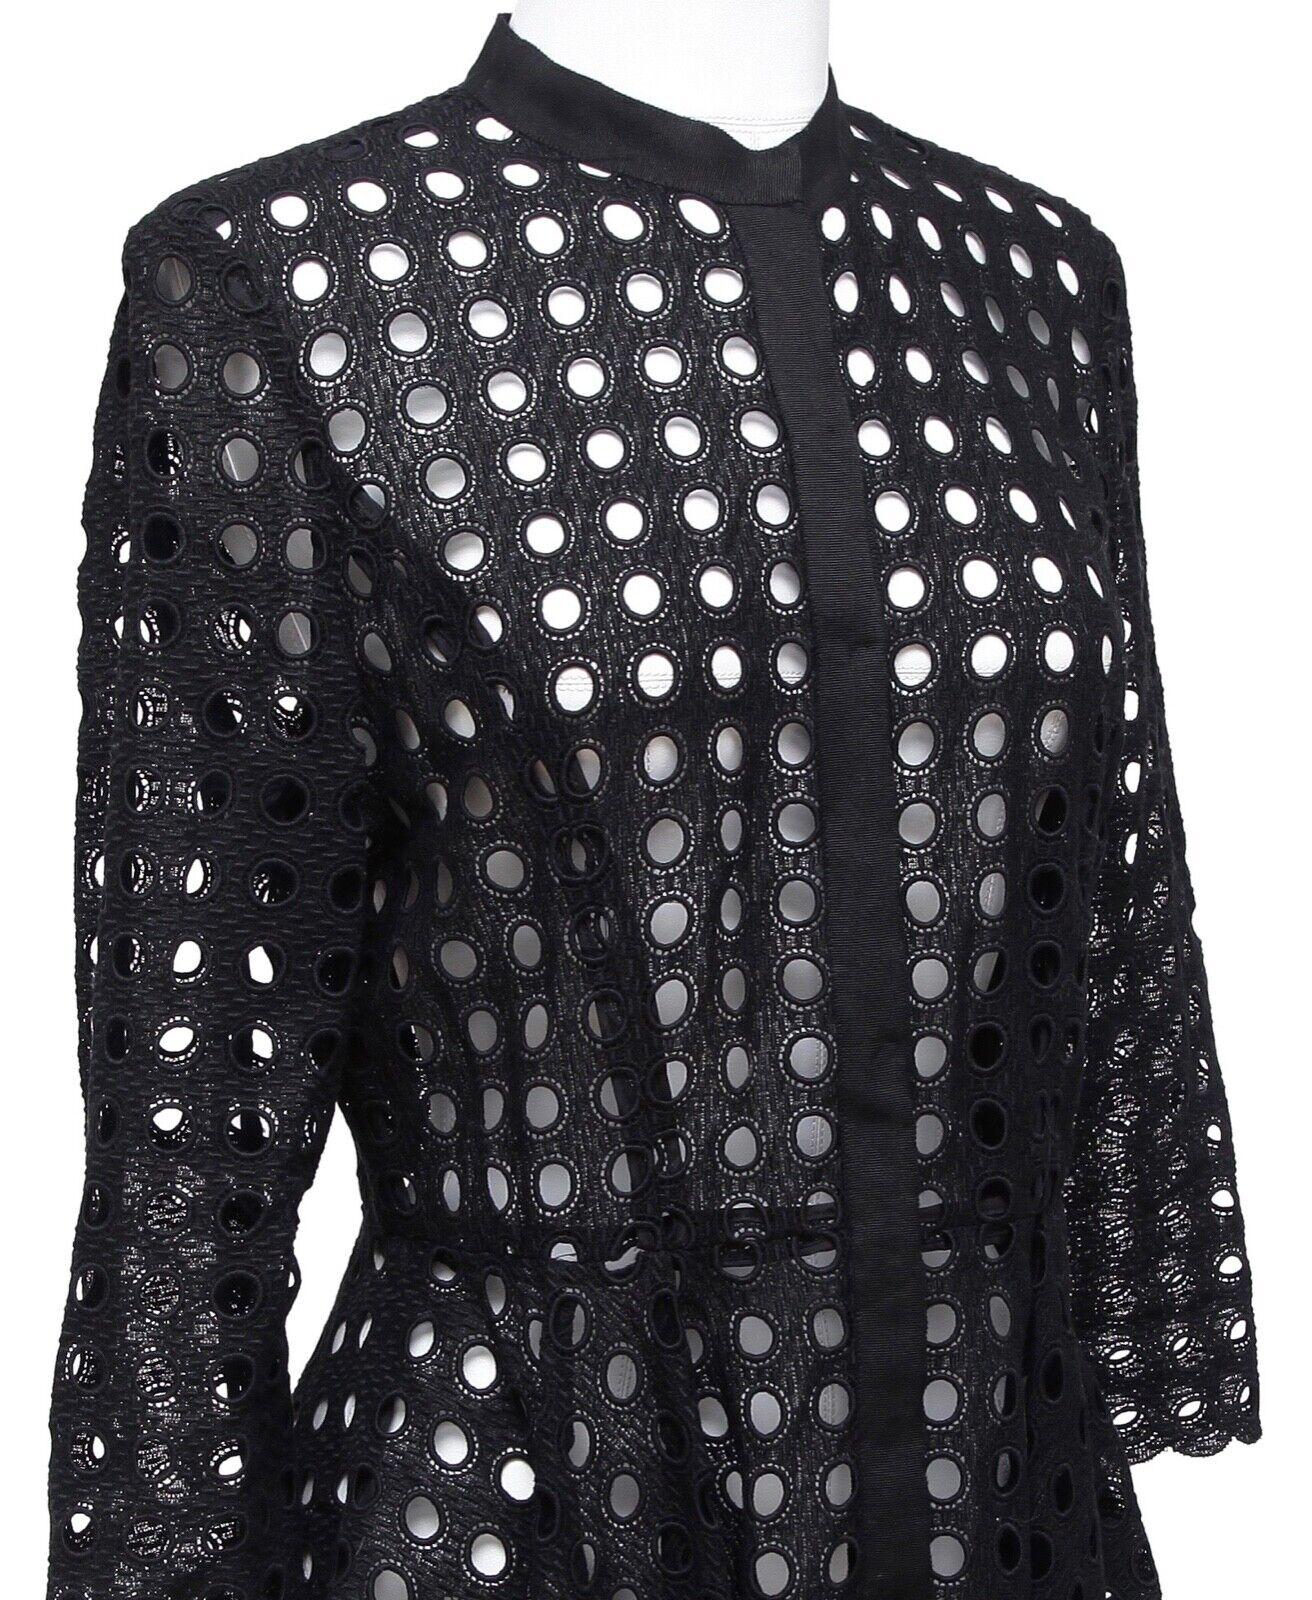 OSCAR DE LA RENTA Black Cardigan Jacket Eyelet Lace 3/4 Sleeve Sz 4 For Sale 1